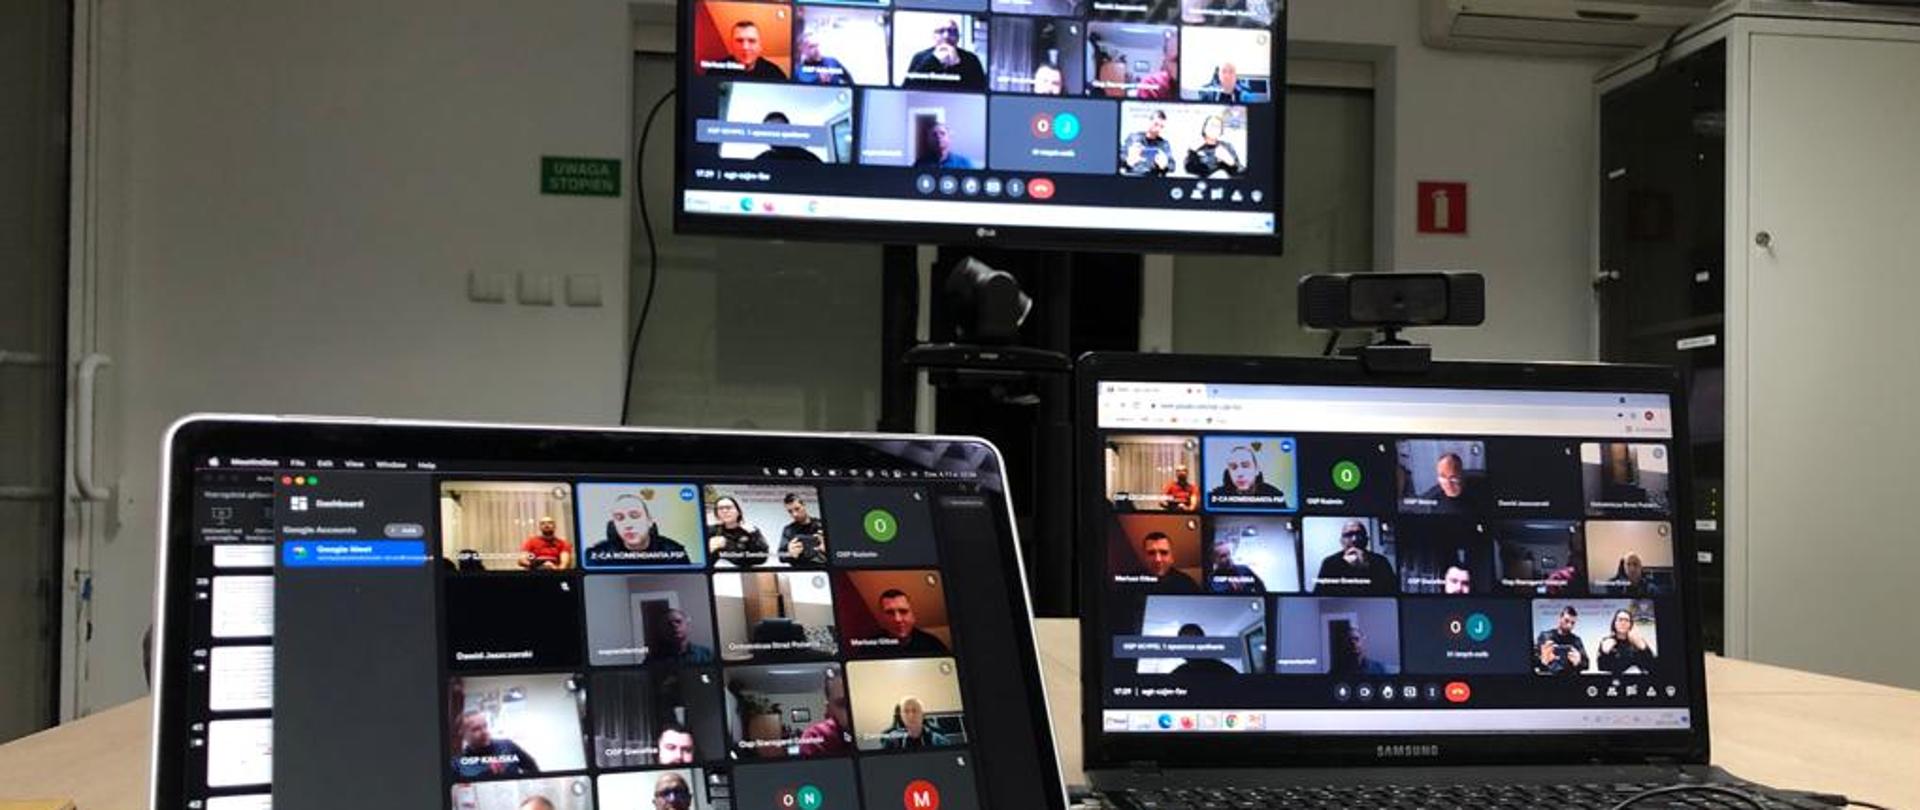 Zdjęcie przedstawia try pulpity komputerowe, z widokiem uczestników wideokonferencji. Na pierwszym planie myszka komputerowa i mikrofon, w tle stojak ze sprzętem do wideokonferencji